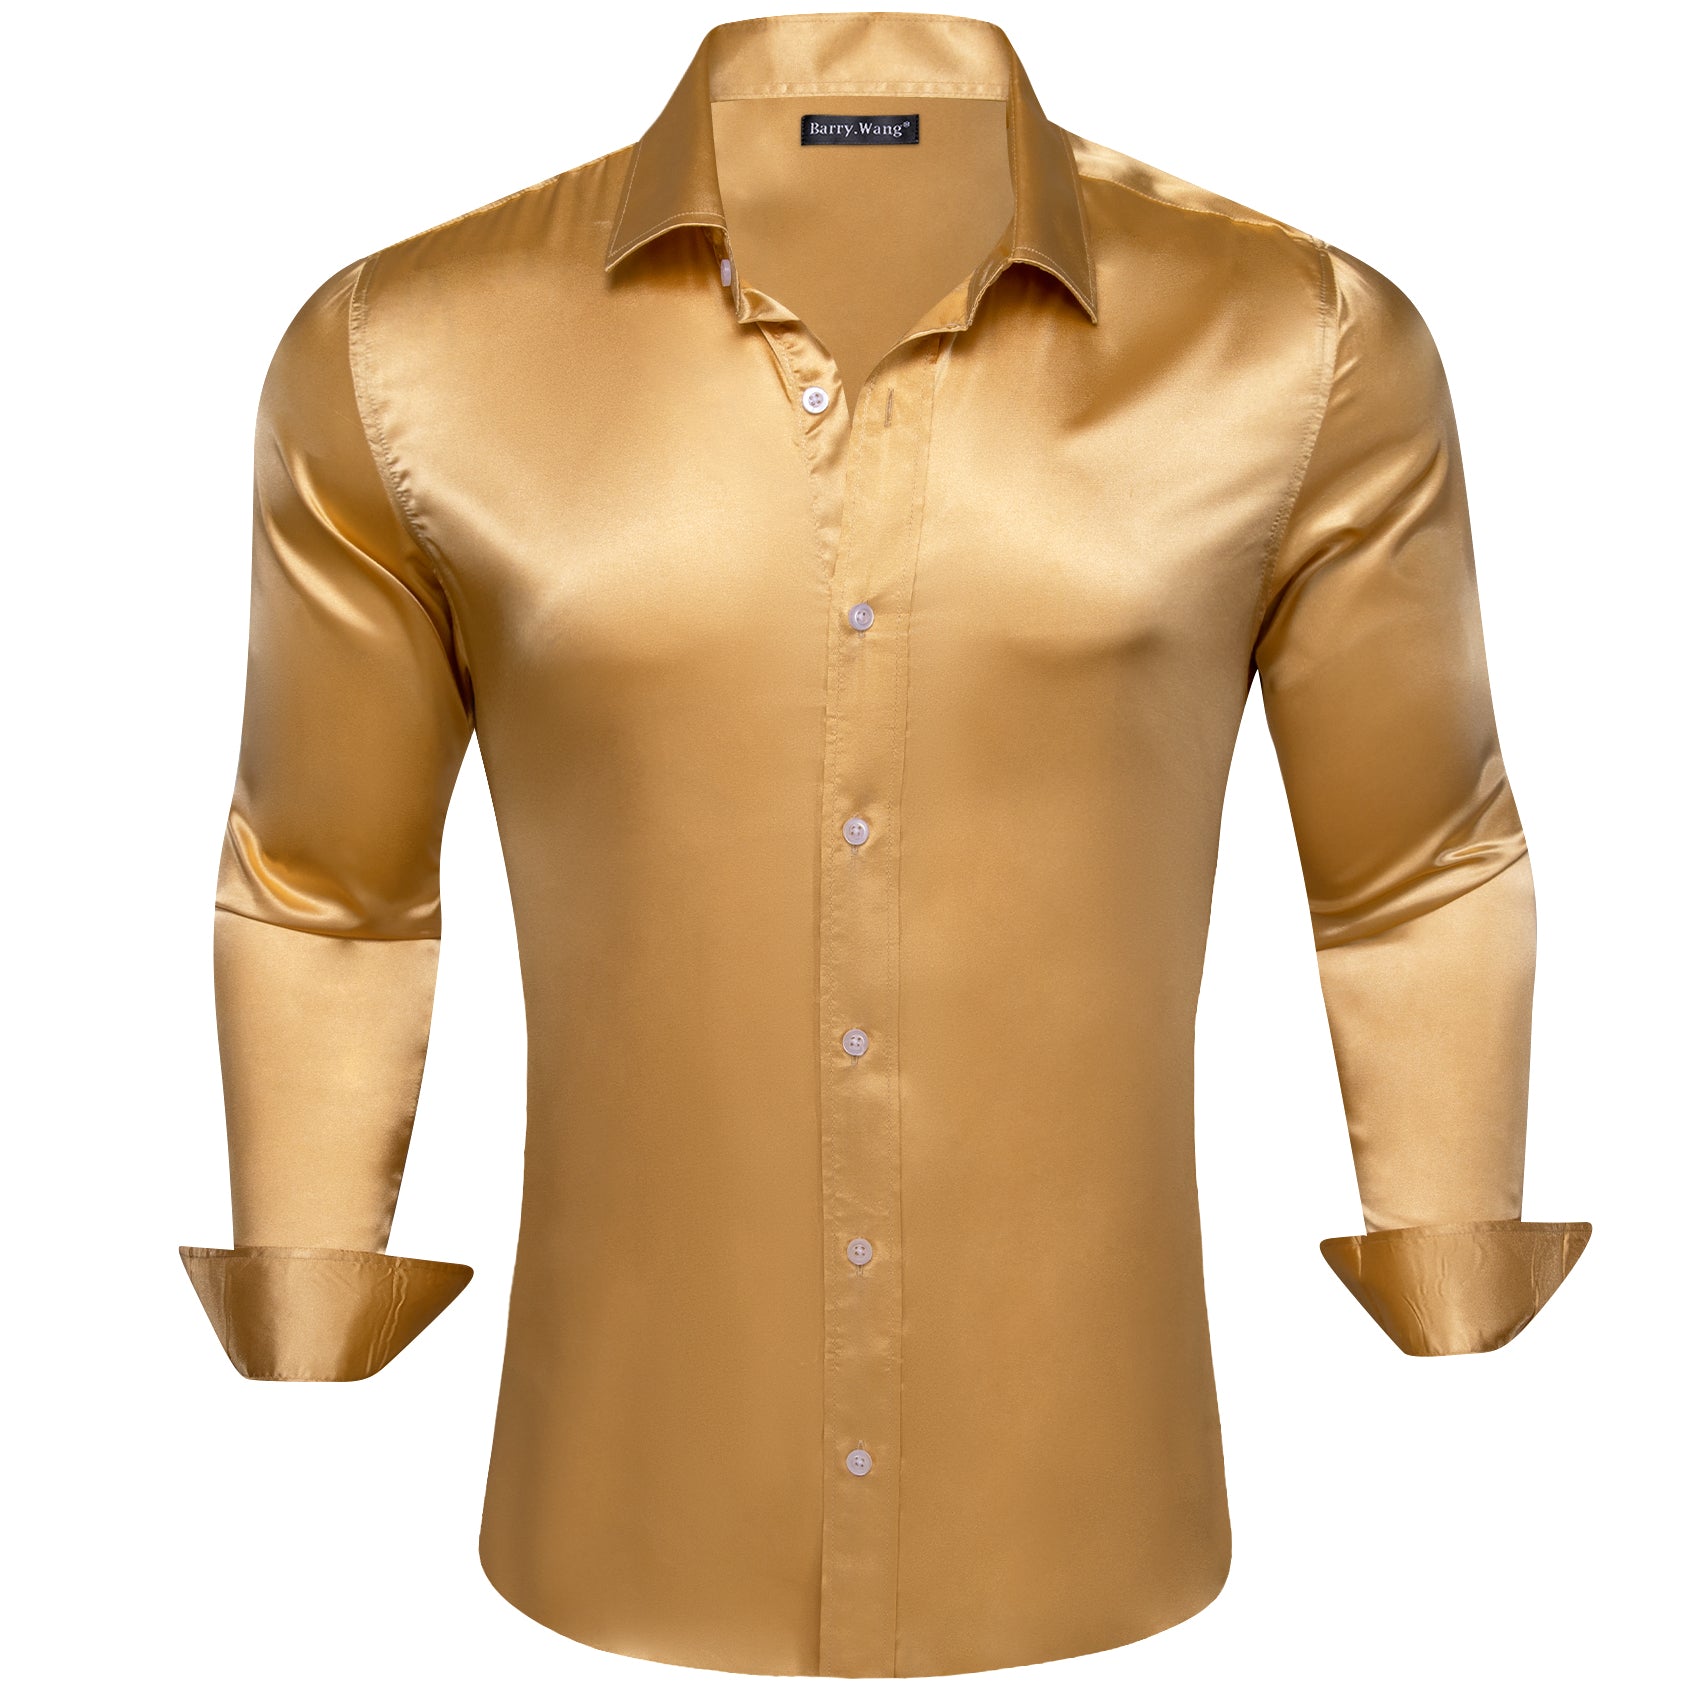 Barry.wang Gold Solid Silk Shirt